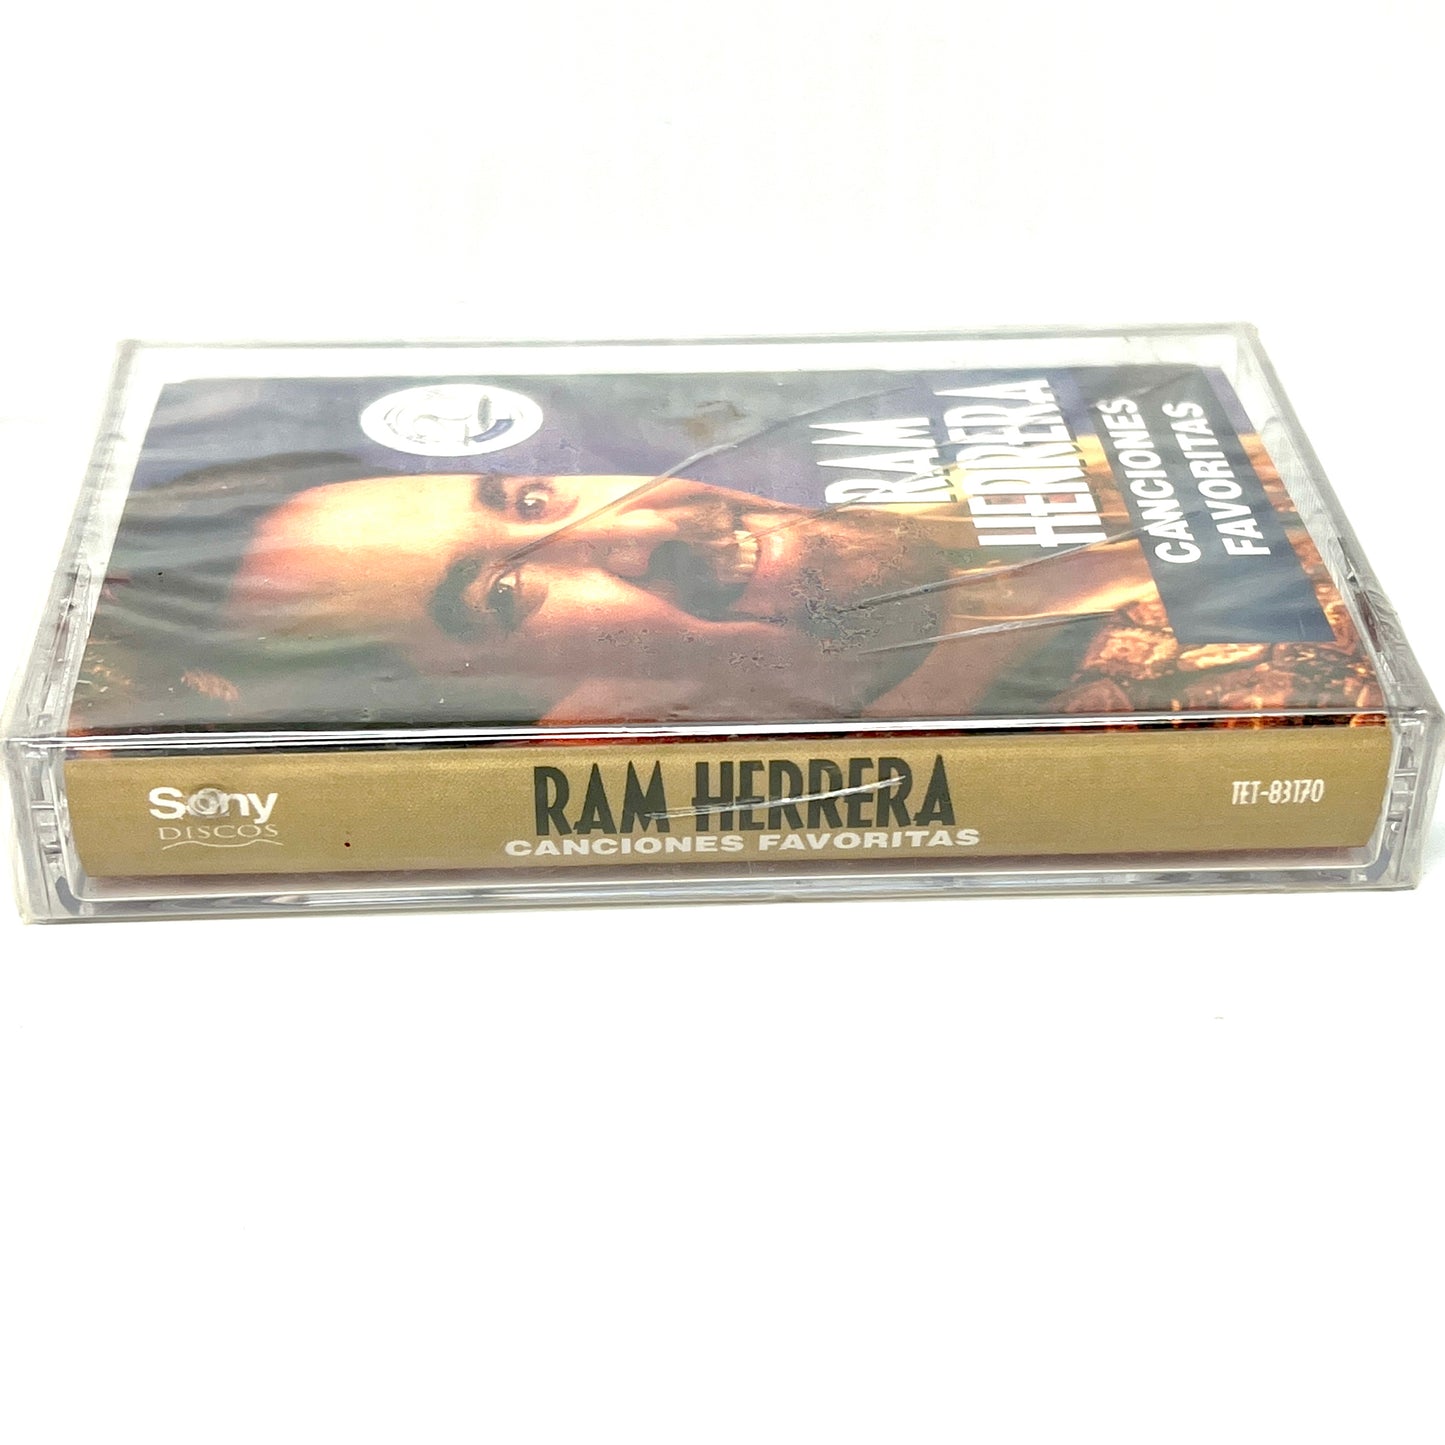 Ram Herrera - Canciones Favoritas (Cassette)